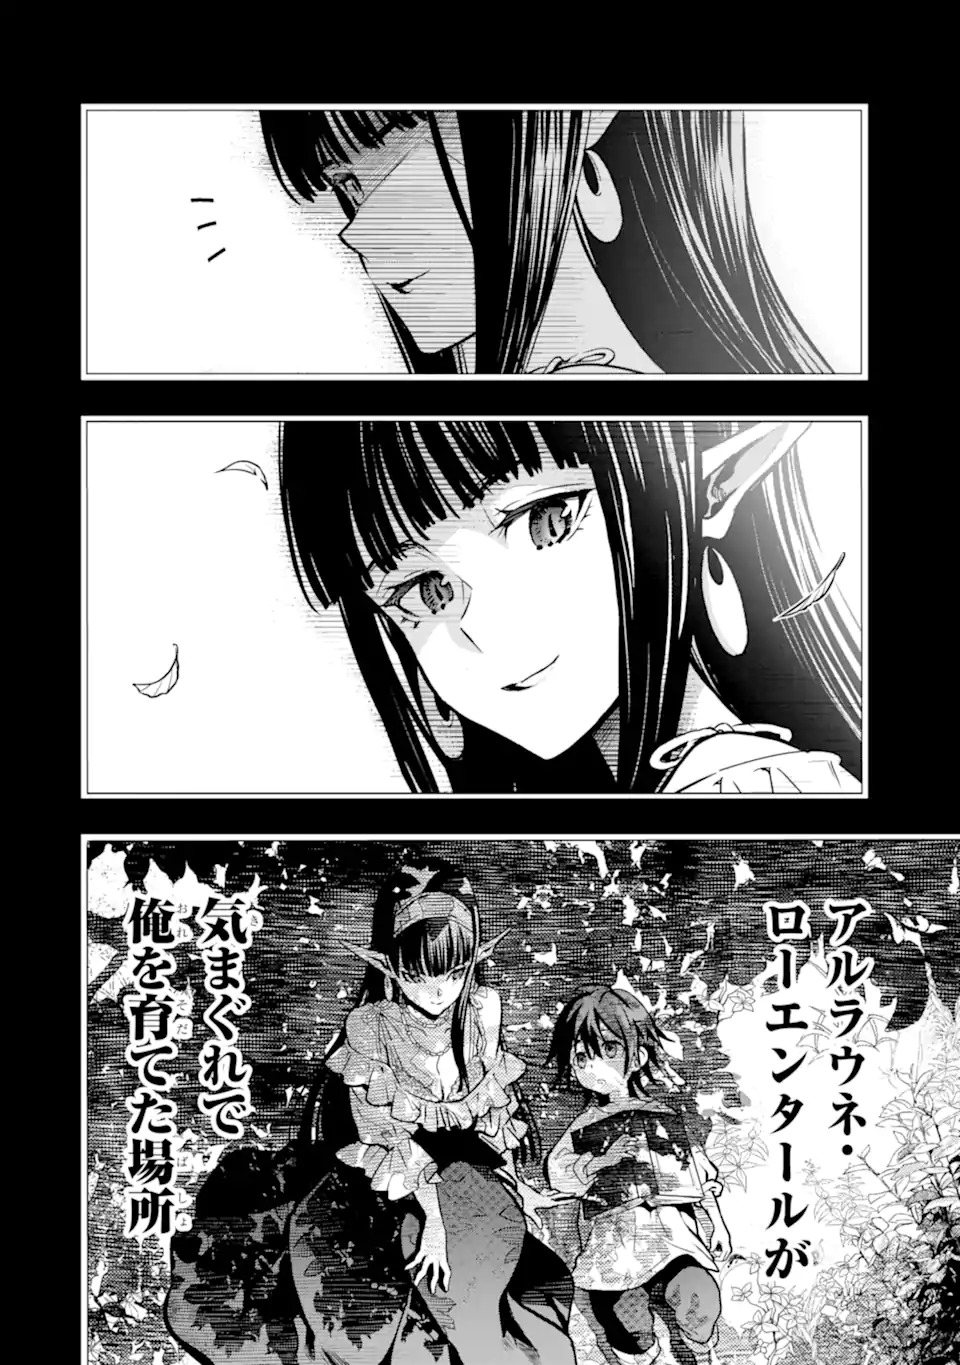 Koko wa Ore ni Makasete Saki ni Ike to Itte kara 10 Nen ga Tattara Densetsu ni Natteita - Chapter 37.1 - Page 2